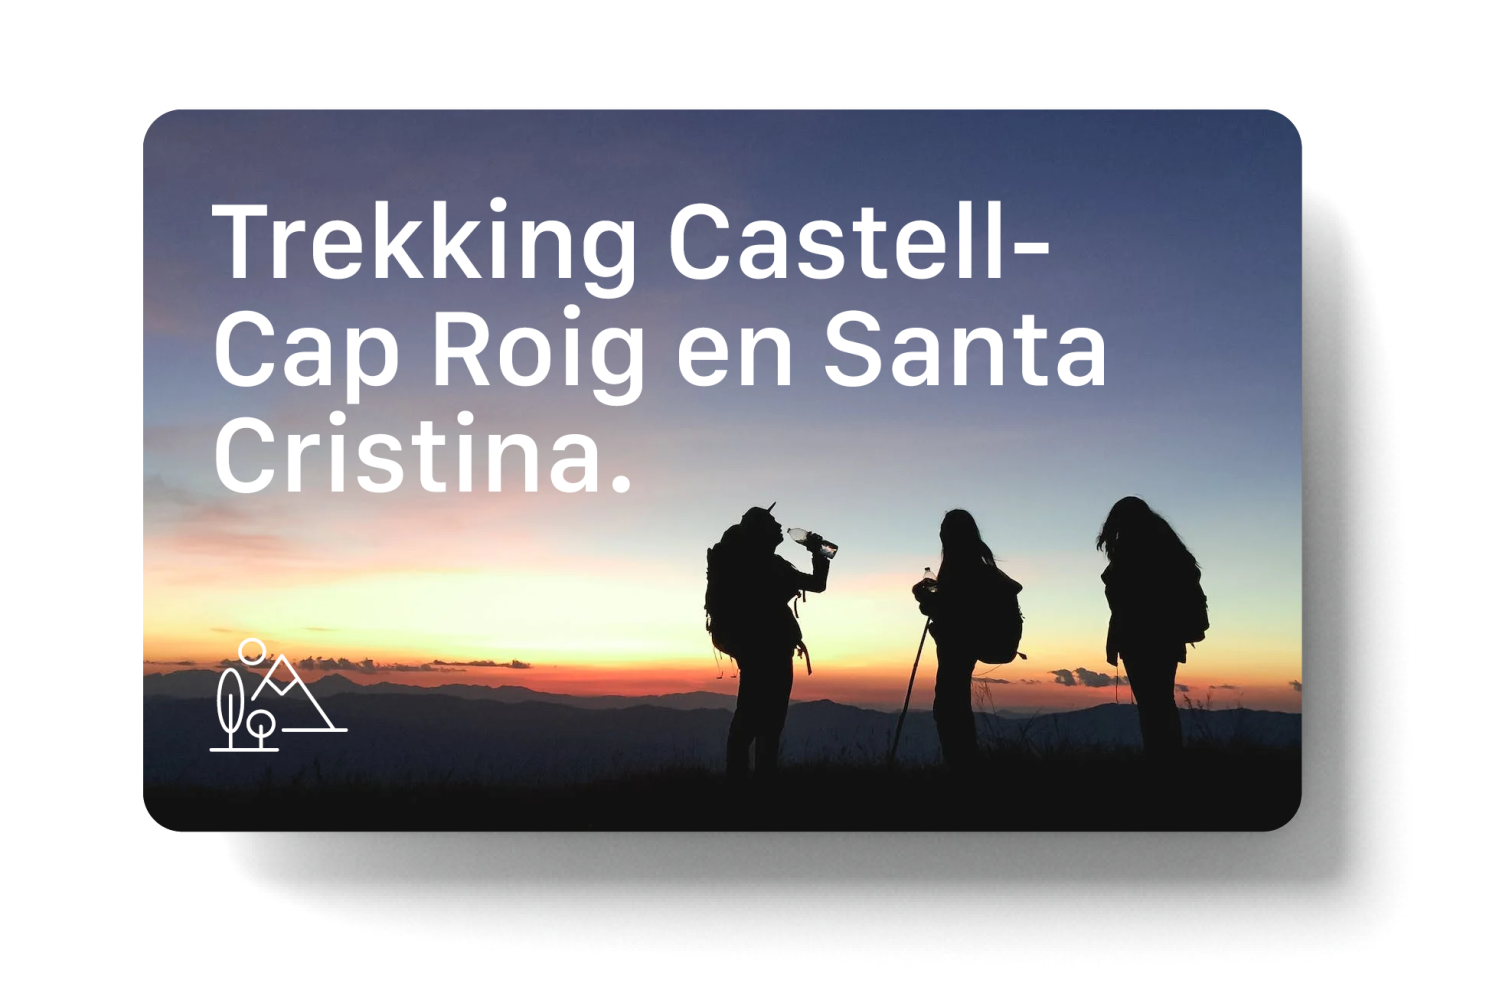 Trekking tour around Castell - Cap Roig